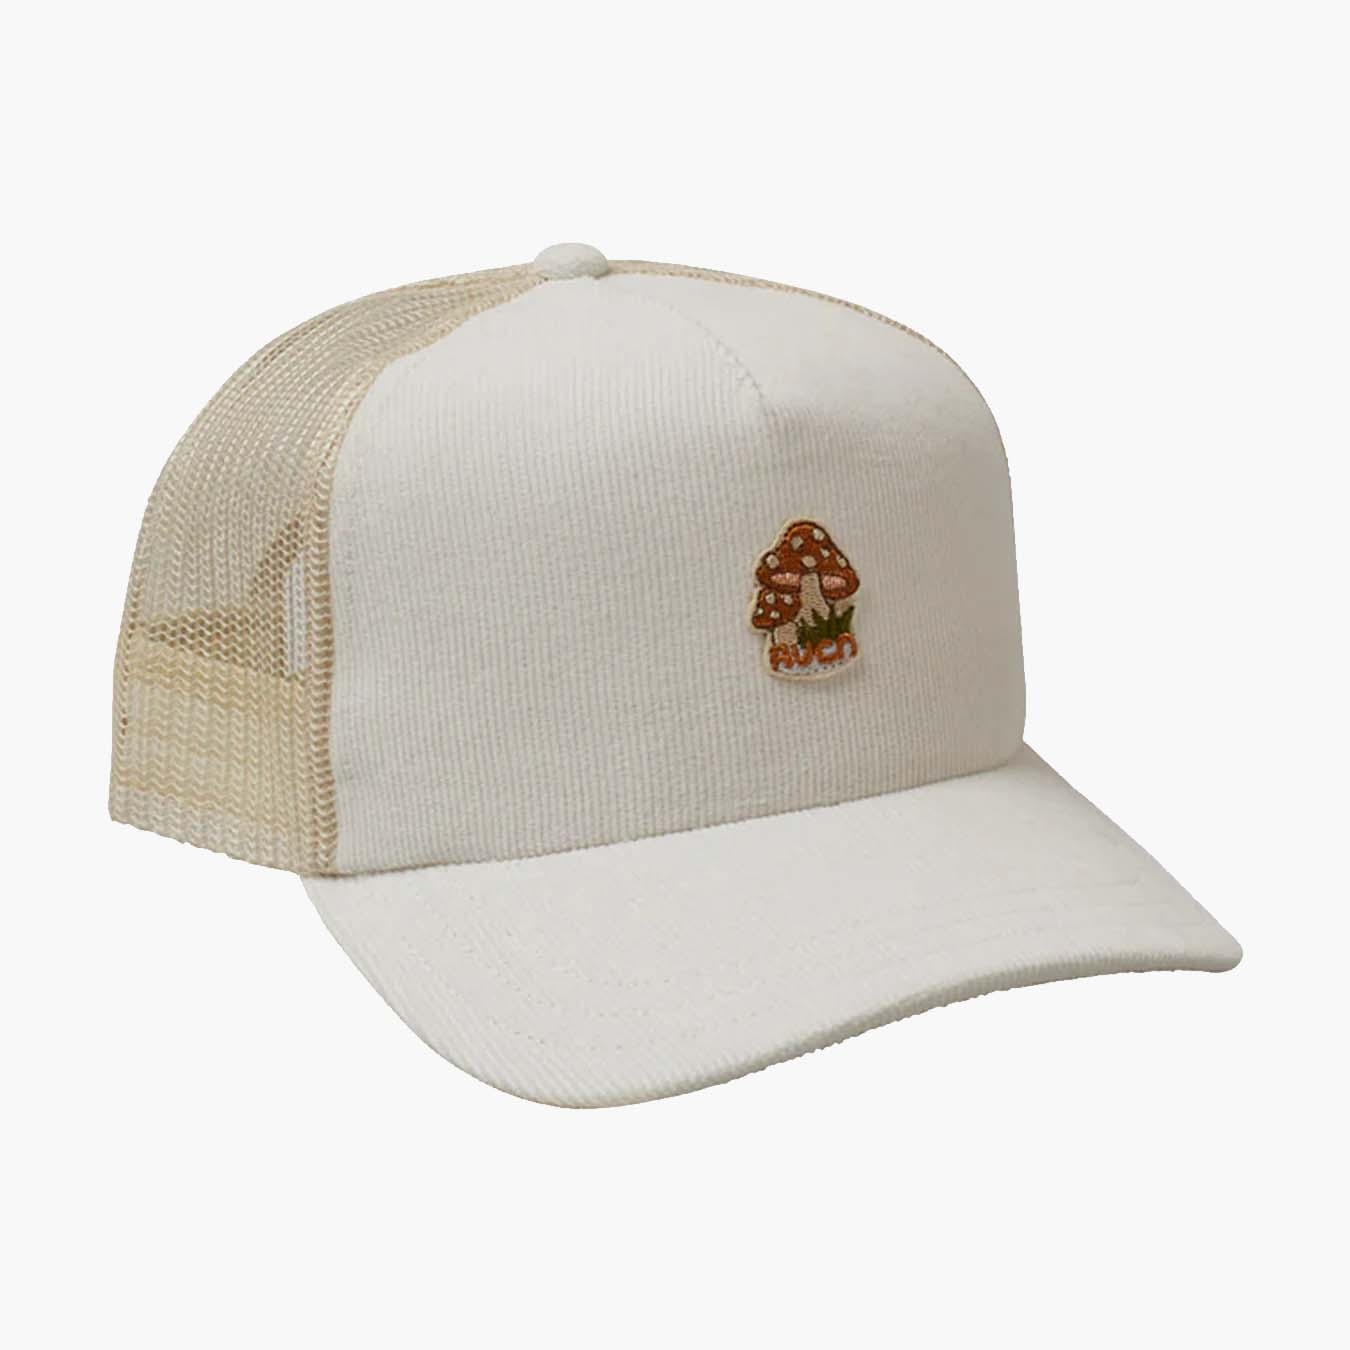 Mushies Trucker Hat